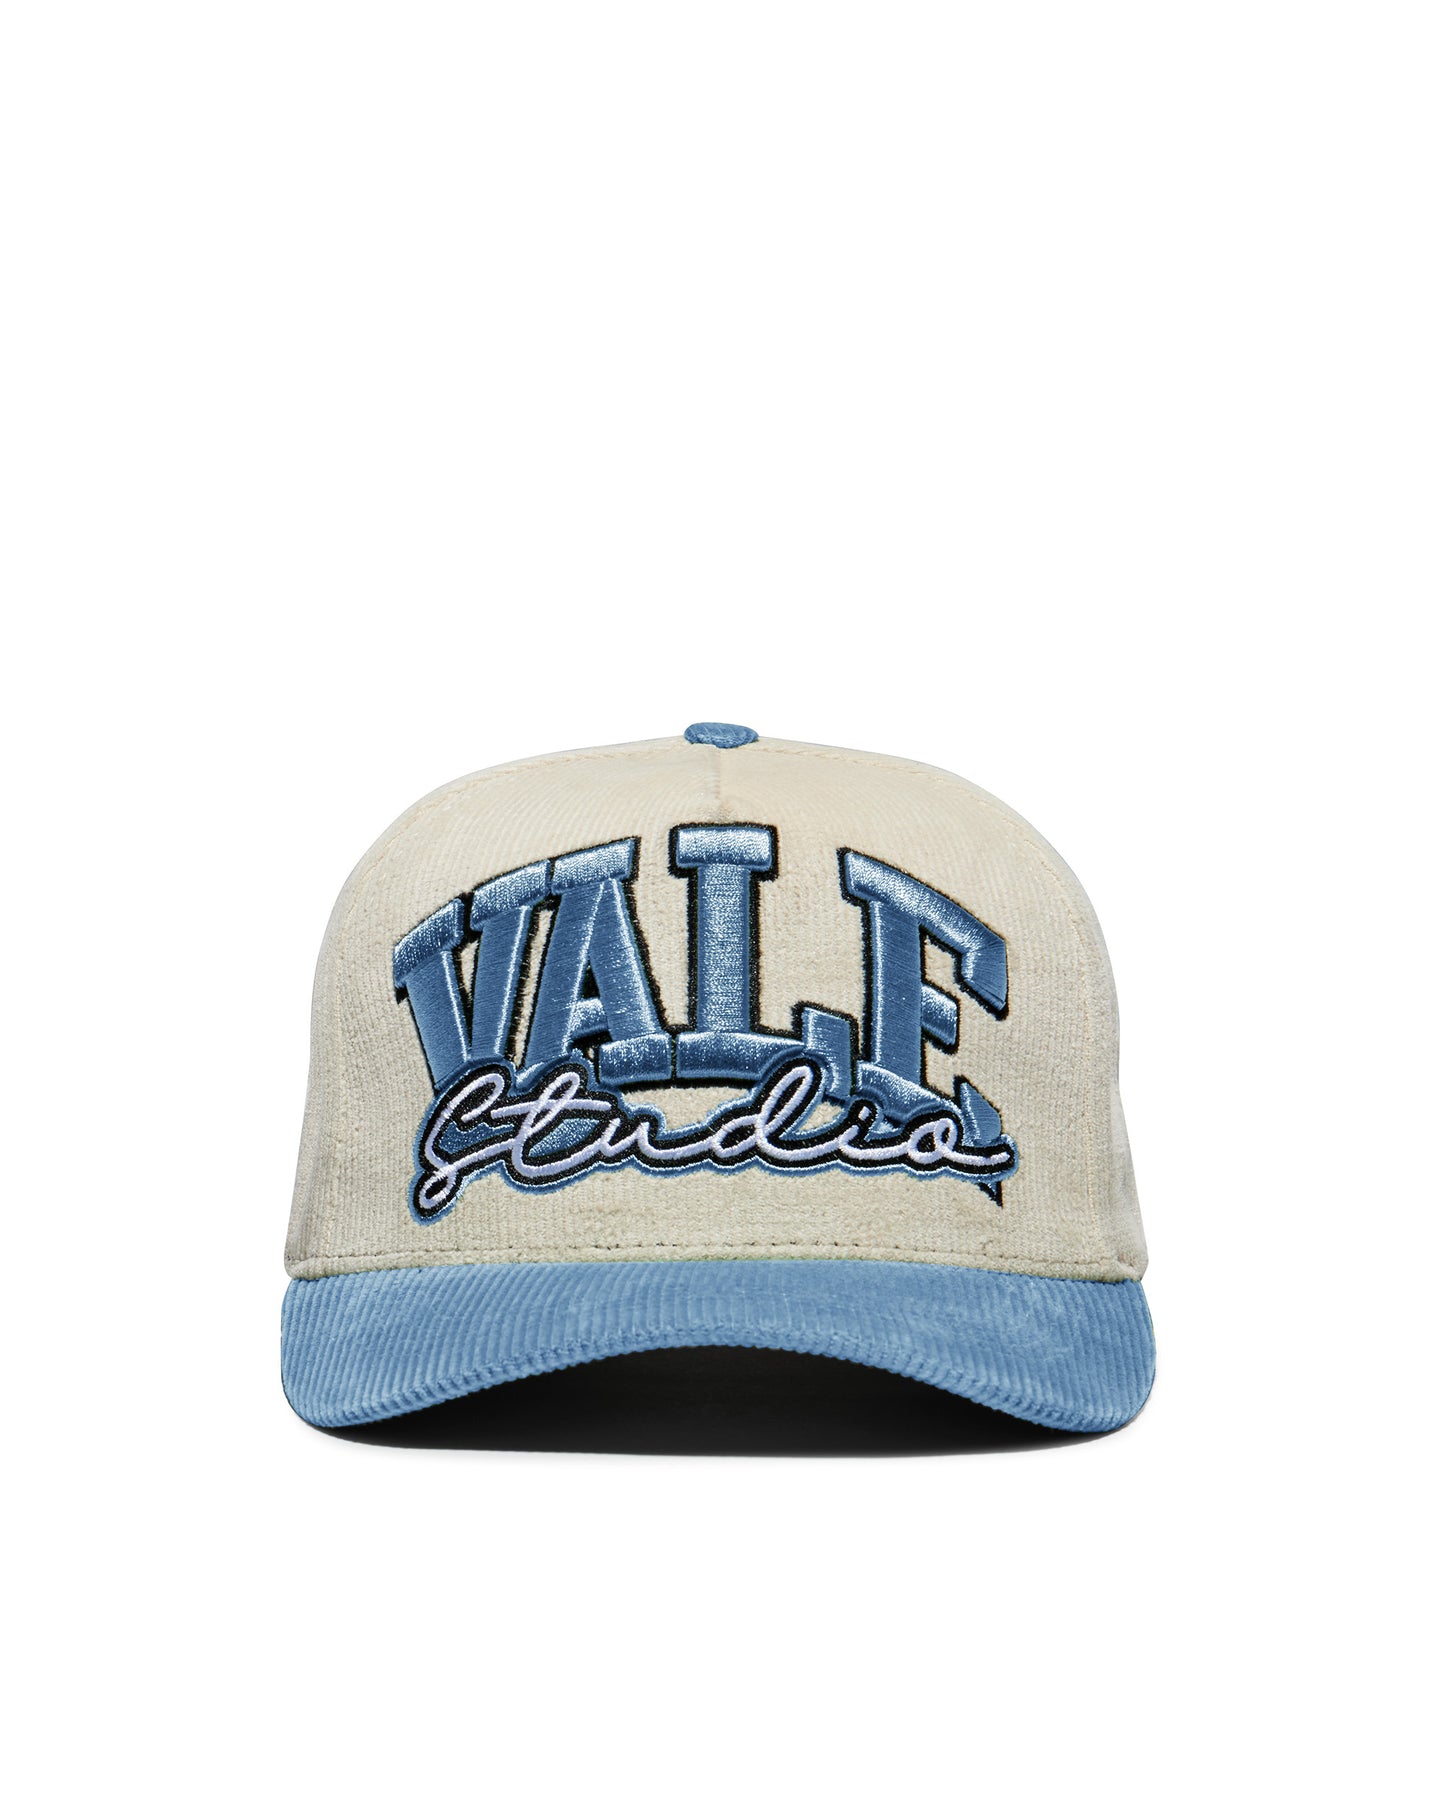 VALE BLUE CORDUROY HAT